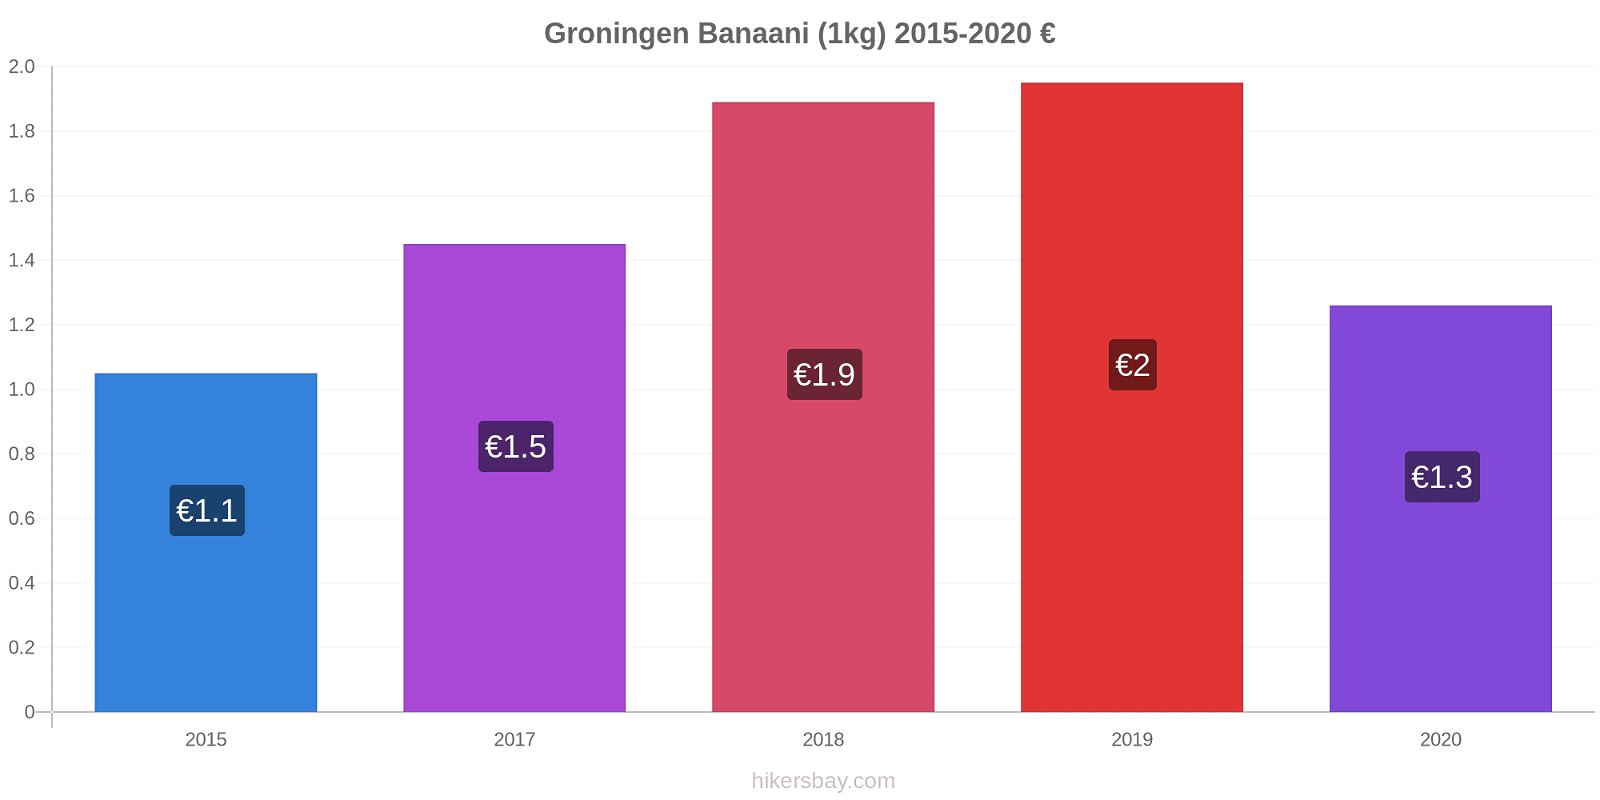 Groningen hintojen muutokset Banaani (1kg) hikersbay.com